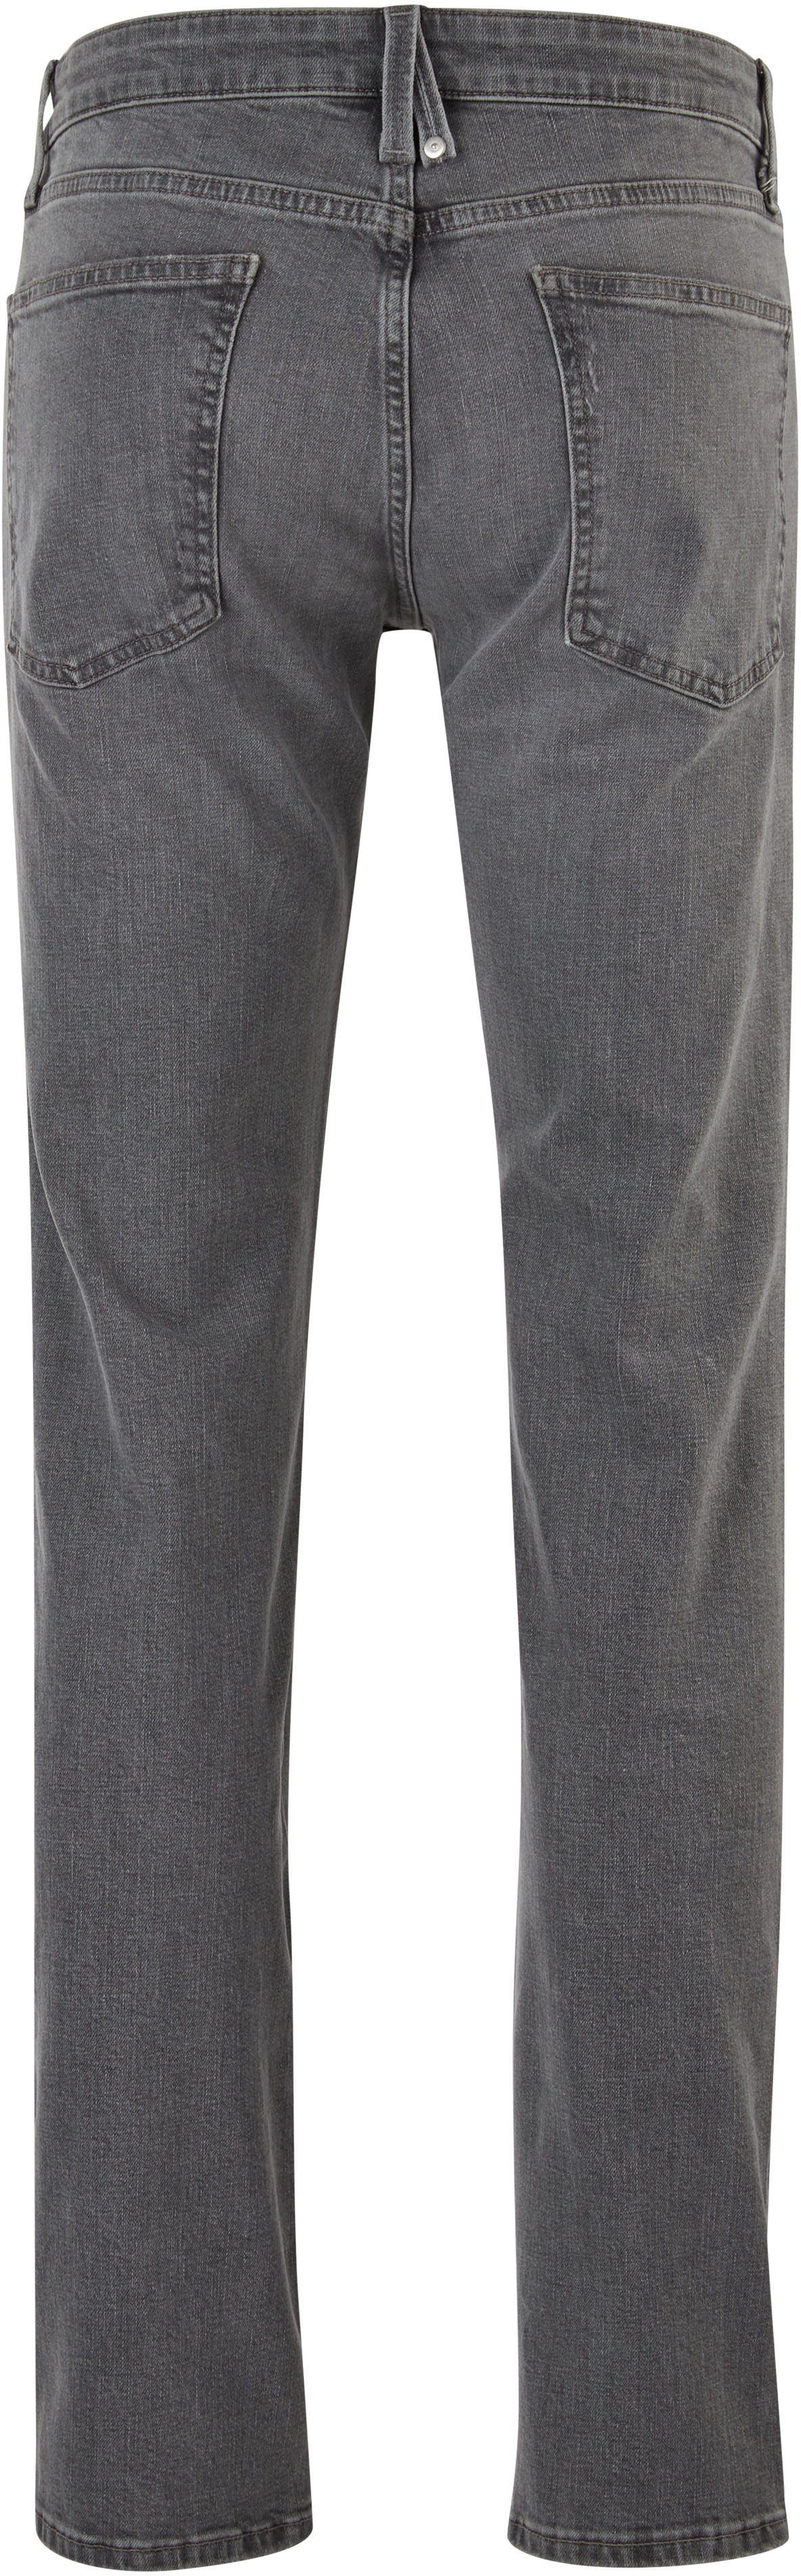 s.Oliver 5-Pocket-Jeans mit Waschung stein-grau authentischer